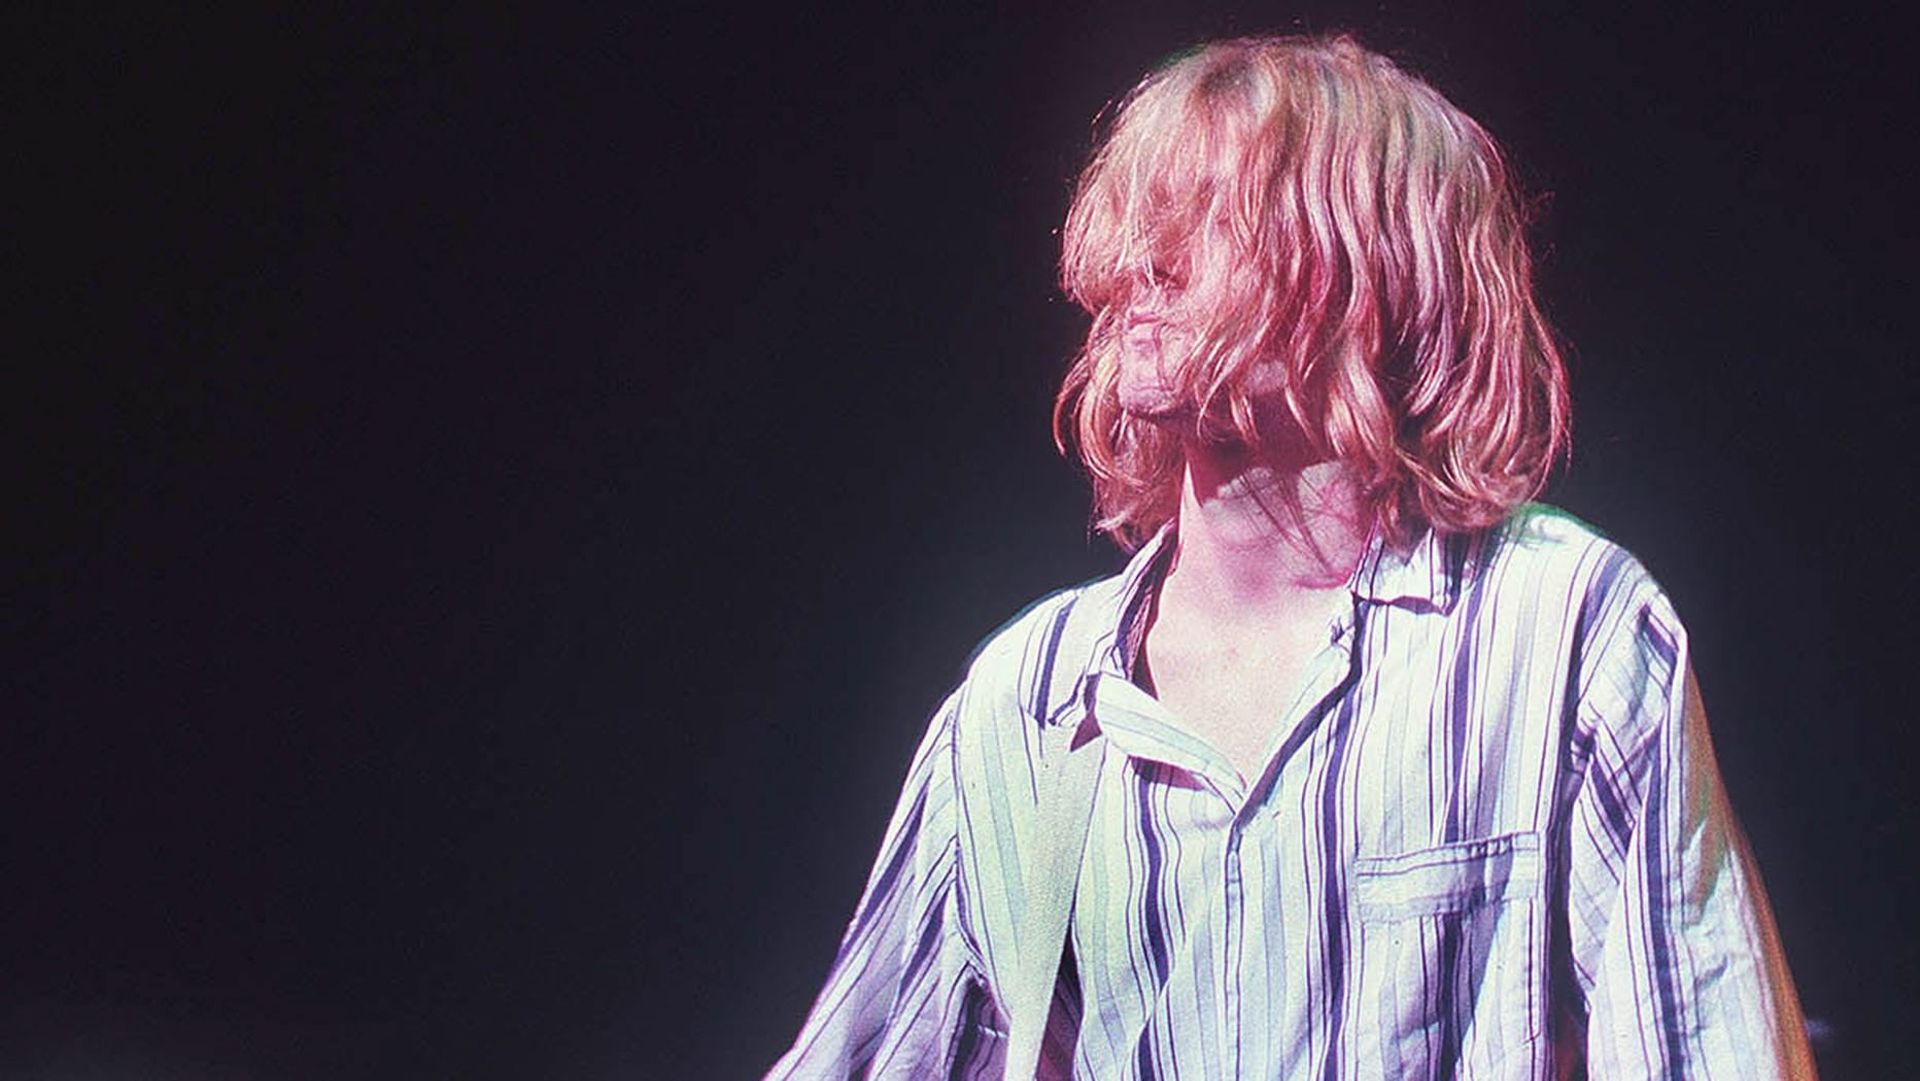 La version de Scala de "Smells Like Teen Spirit" dans un documentaire sur Kurt Cobain